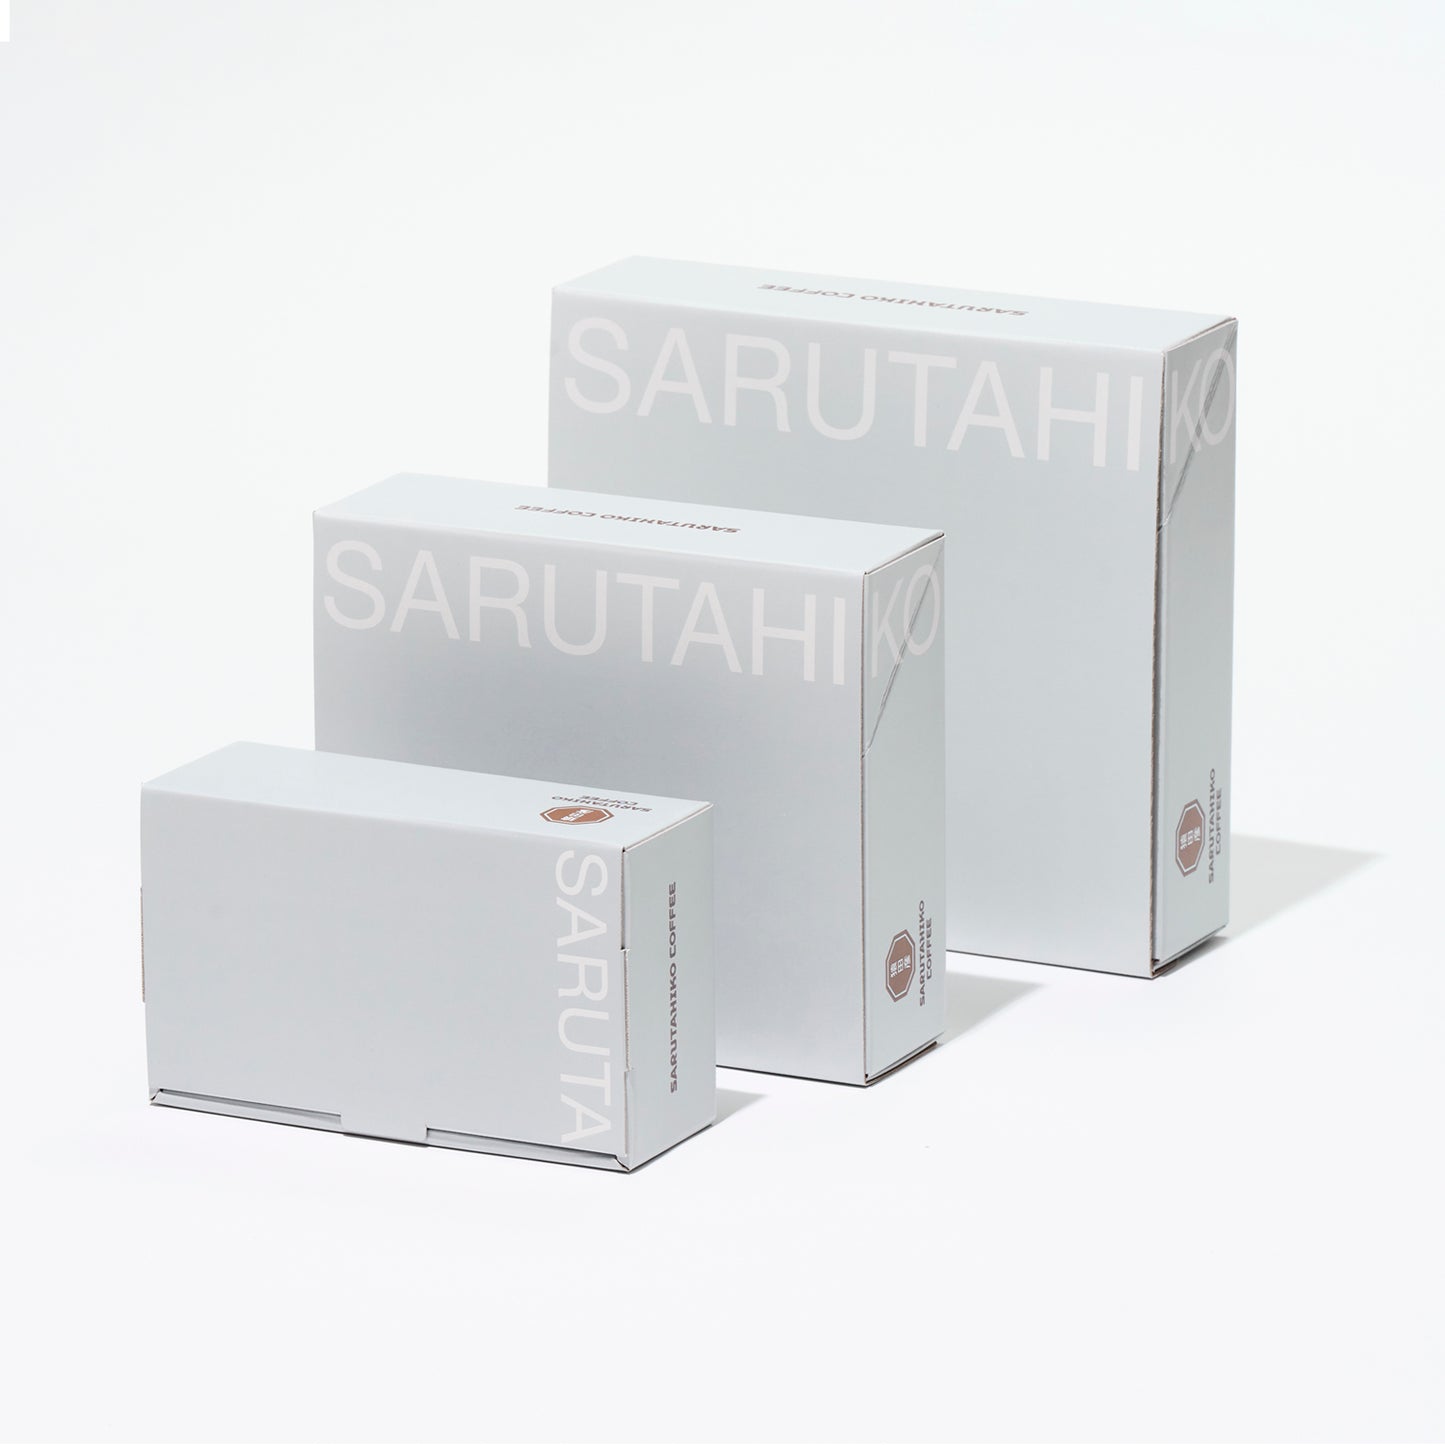 Sarutahiko blended gift 100g set